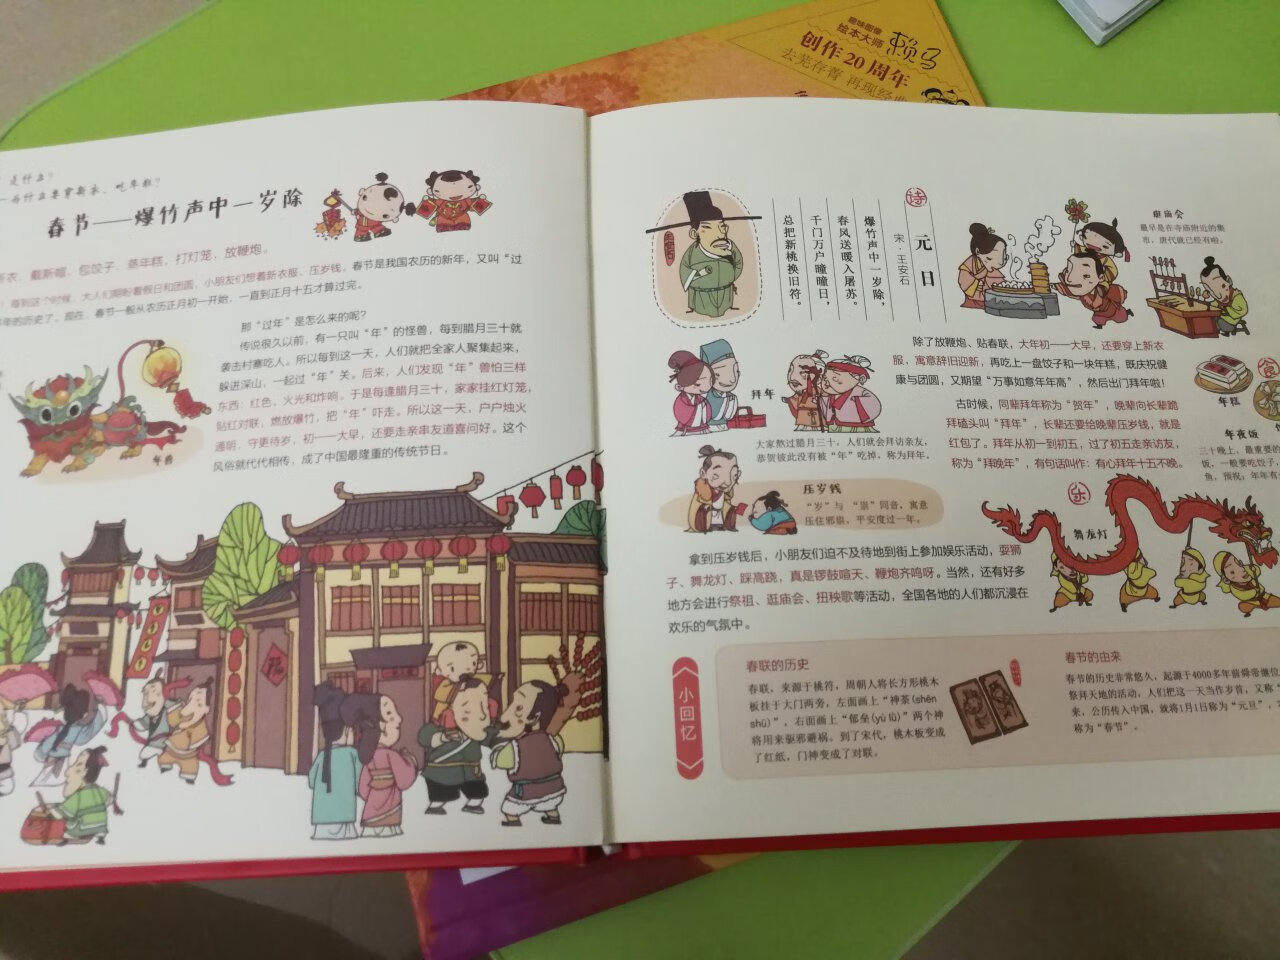 介绍中国的传统文化，而且科普的非常全面，很不错的一本书